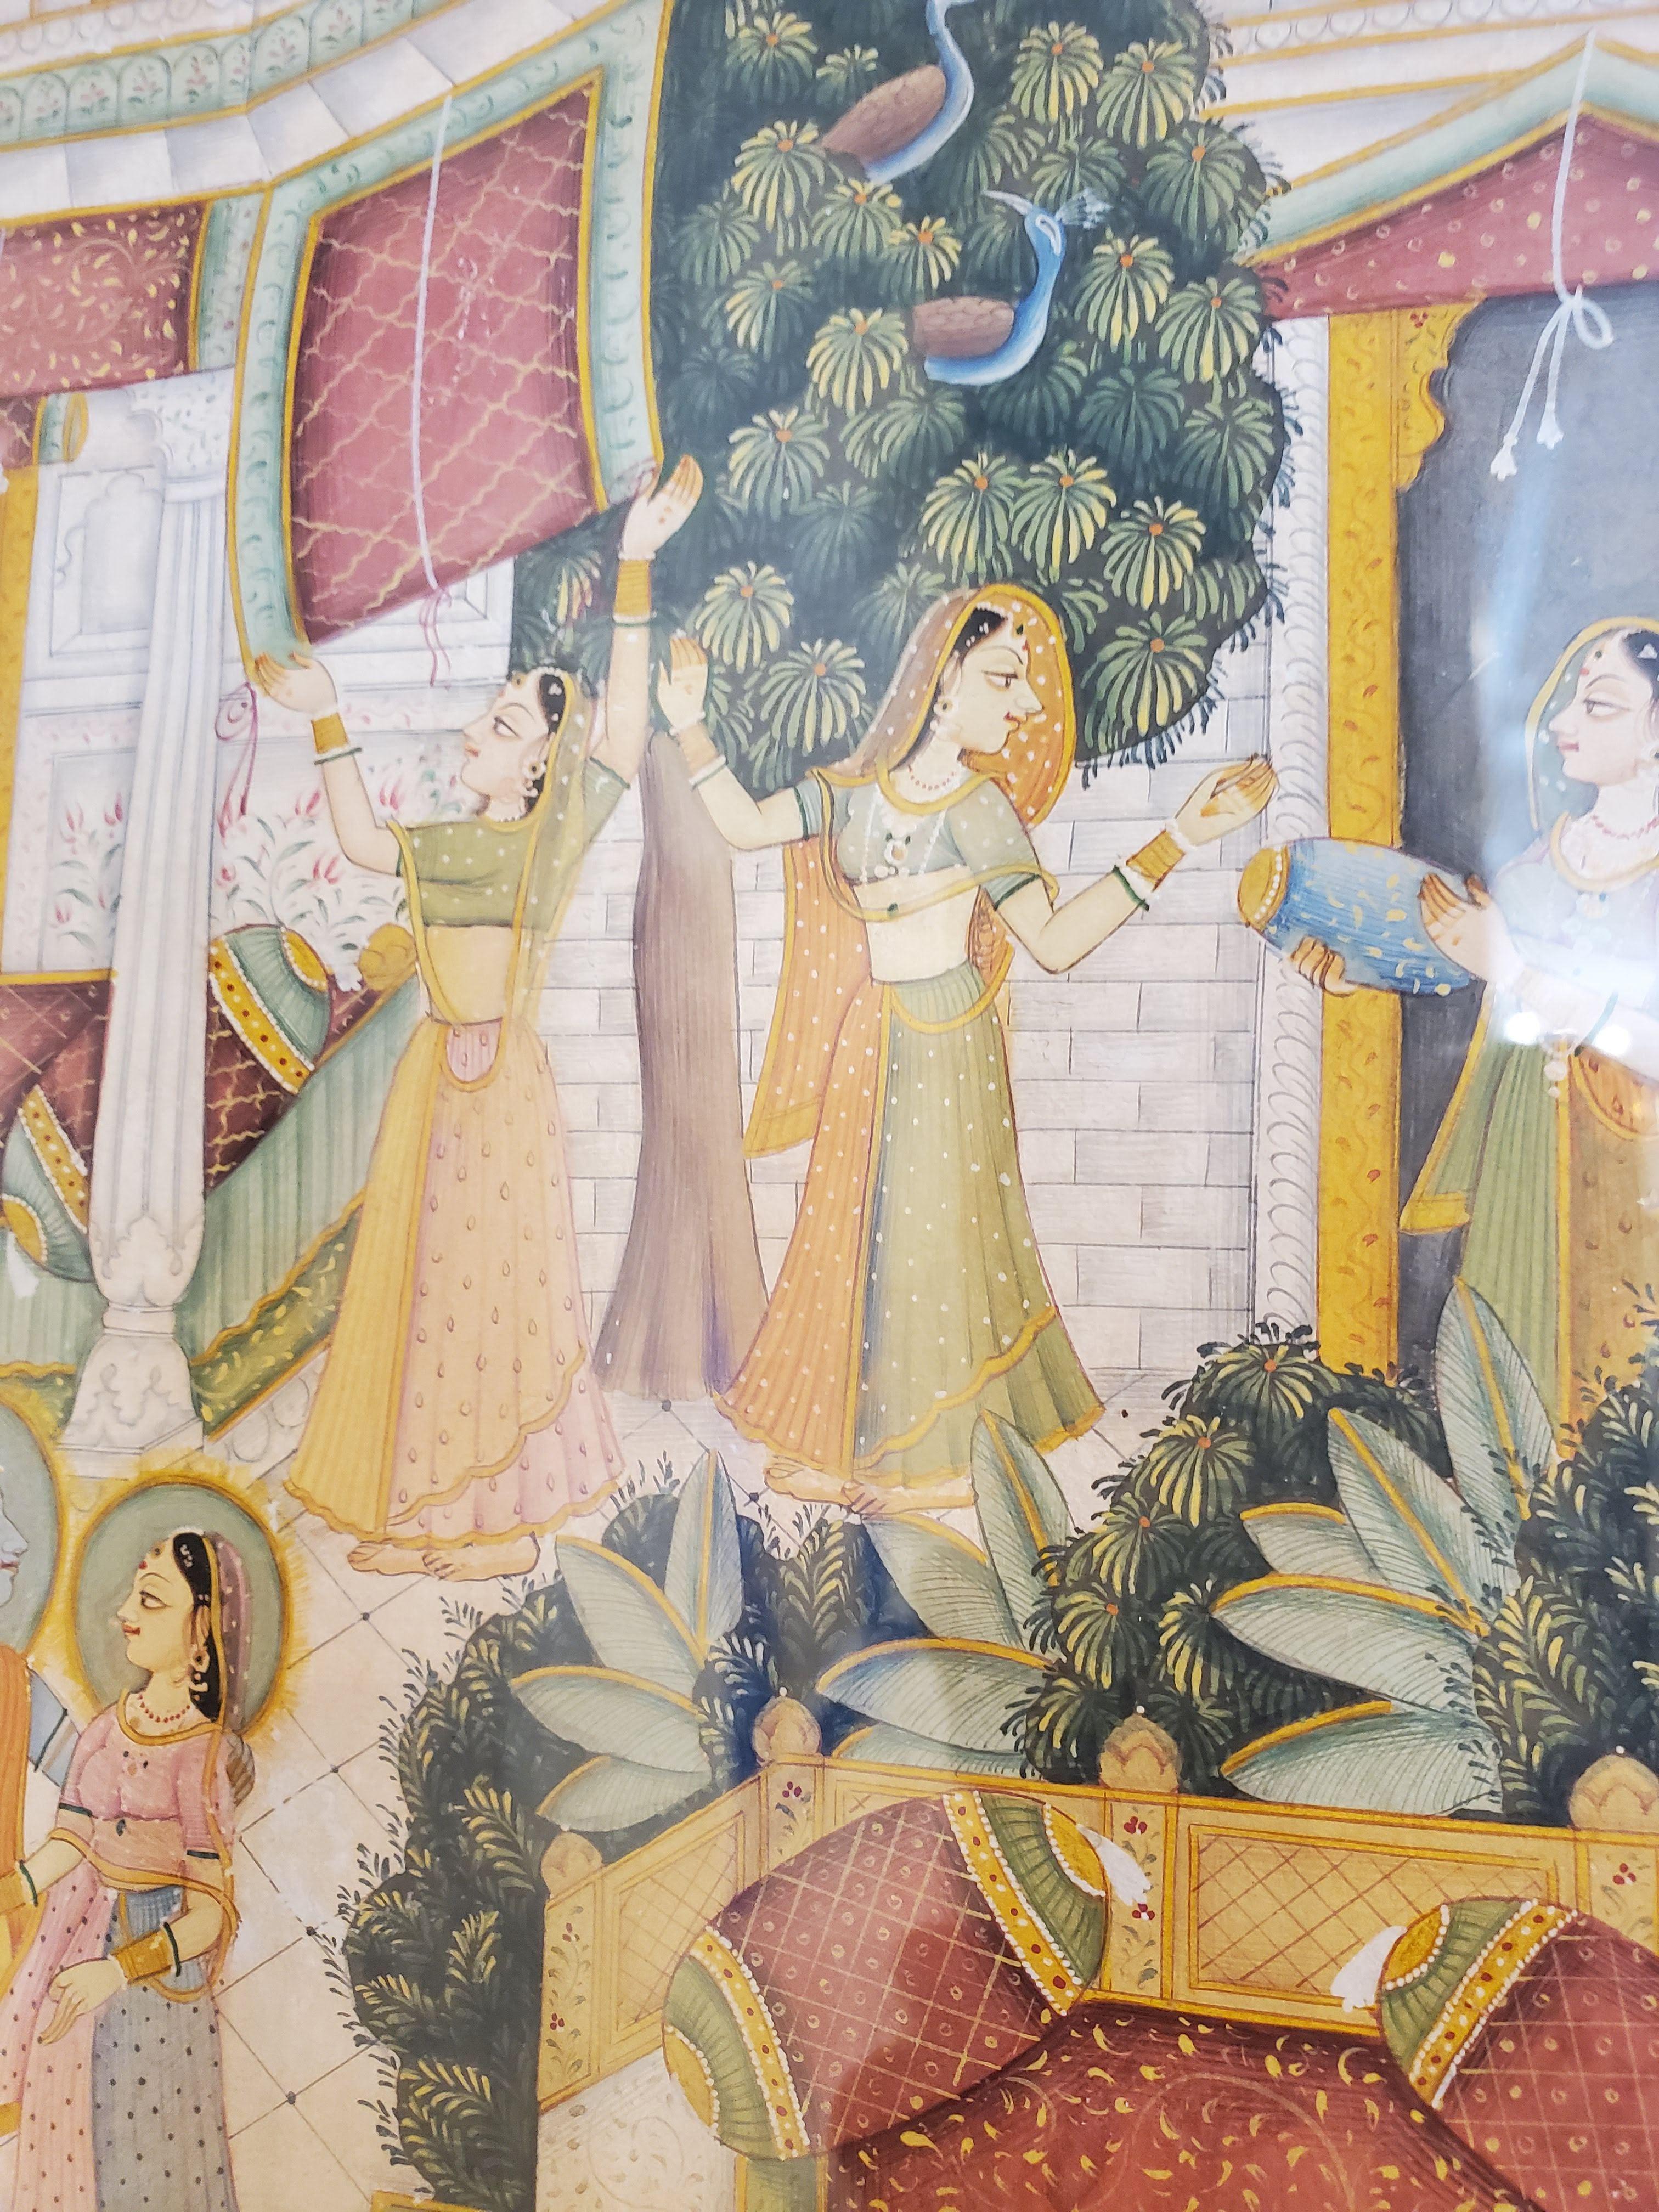 Peinture de cour indienne du XVIIIe siècle finement exécutée. Gouache rehaussée d'or sur papier. Krishna avec Radha et d'autres Gopis dans un palais. Des détails exquis. Encadré dans un passe-partout en lin de couleur havane foncé et un cadre